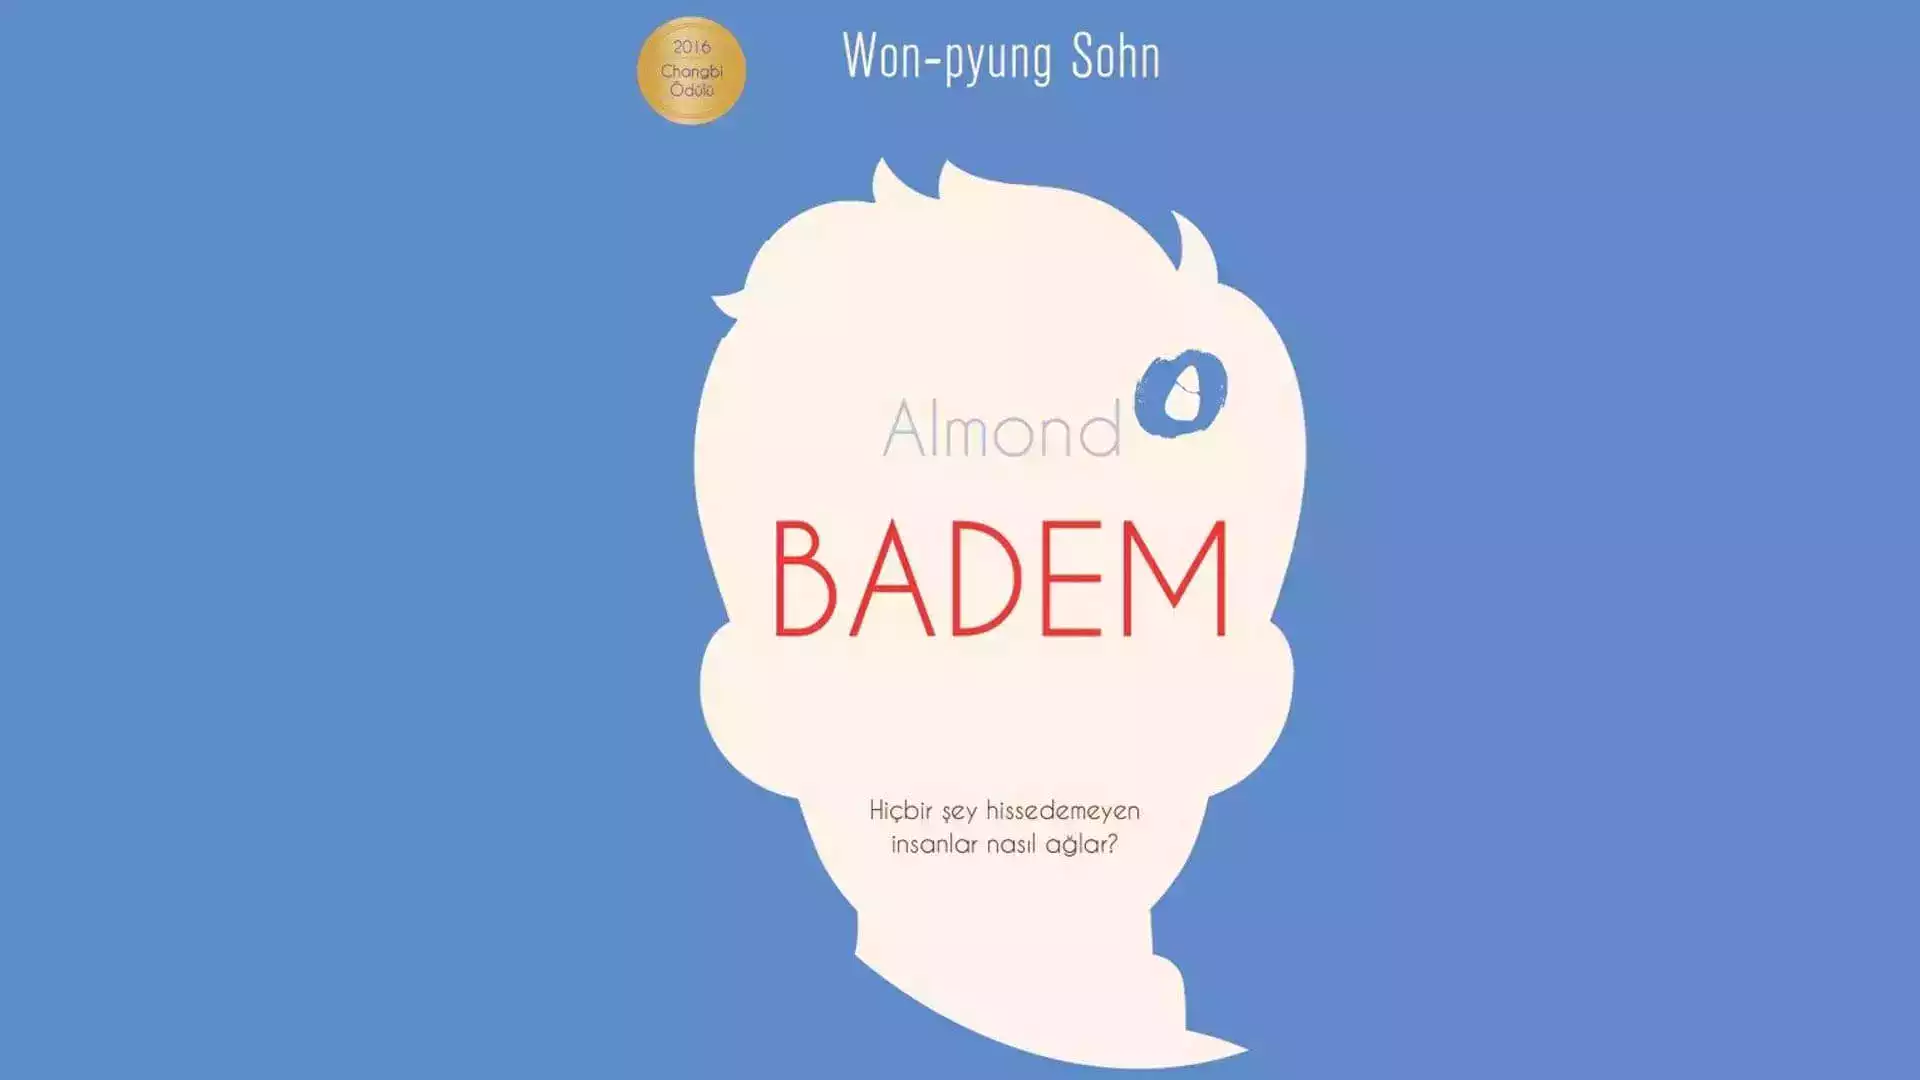 badem won pyung sohn